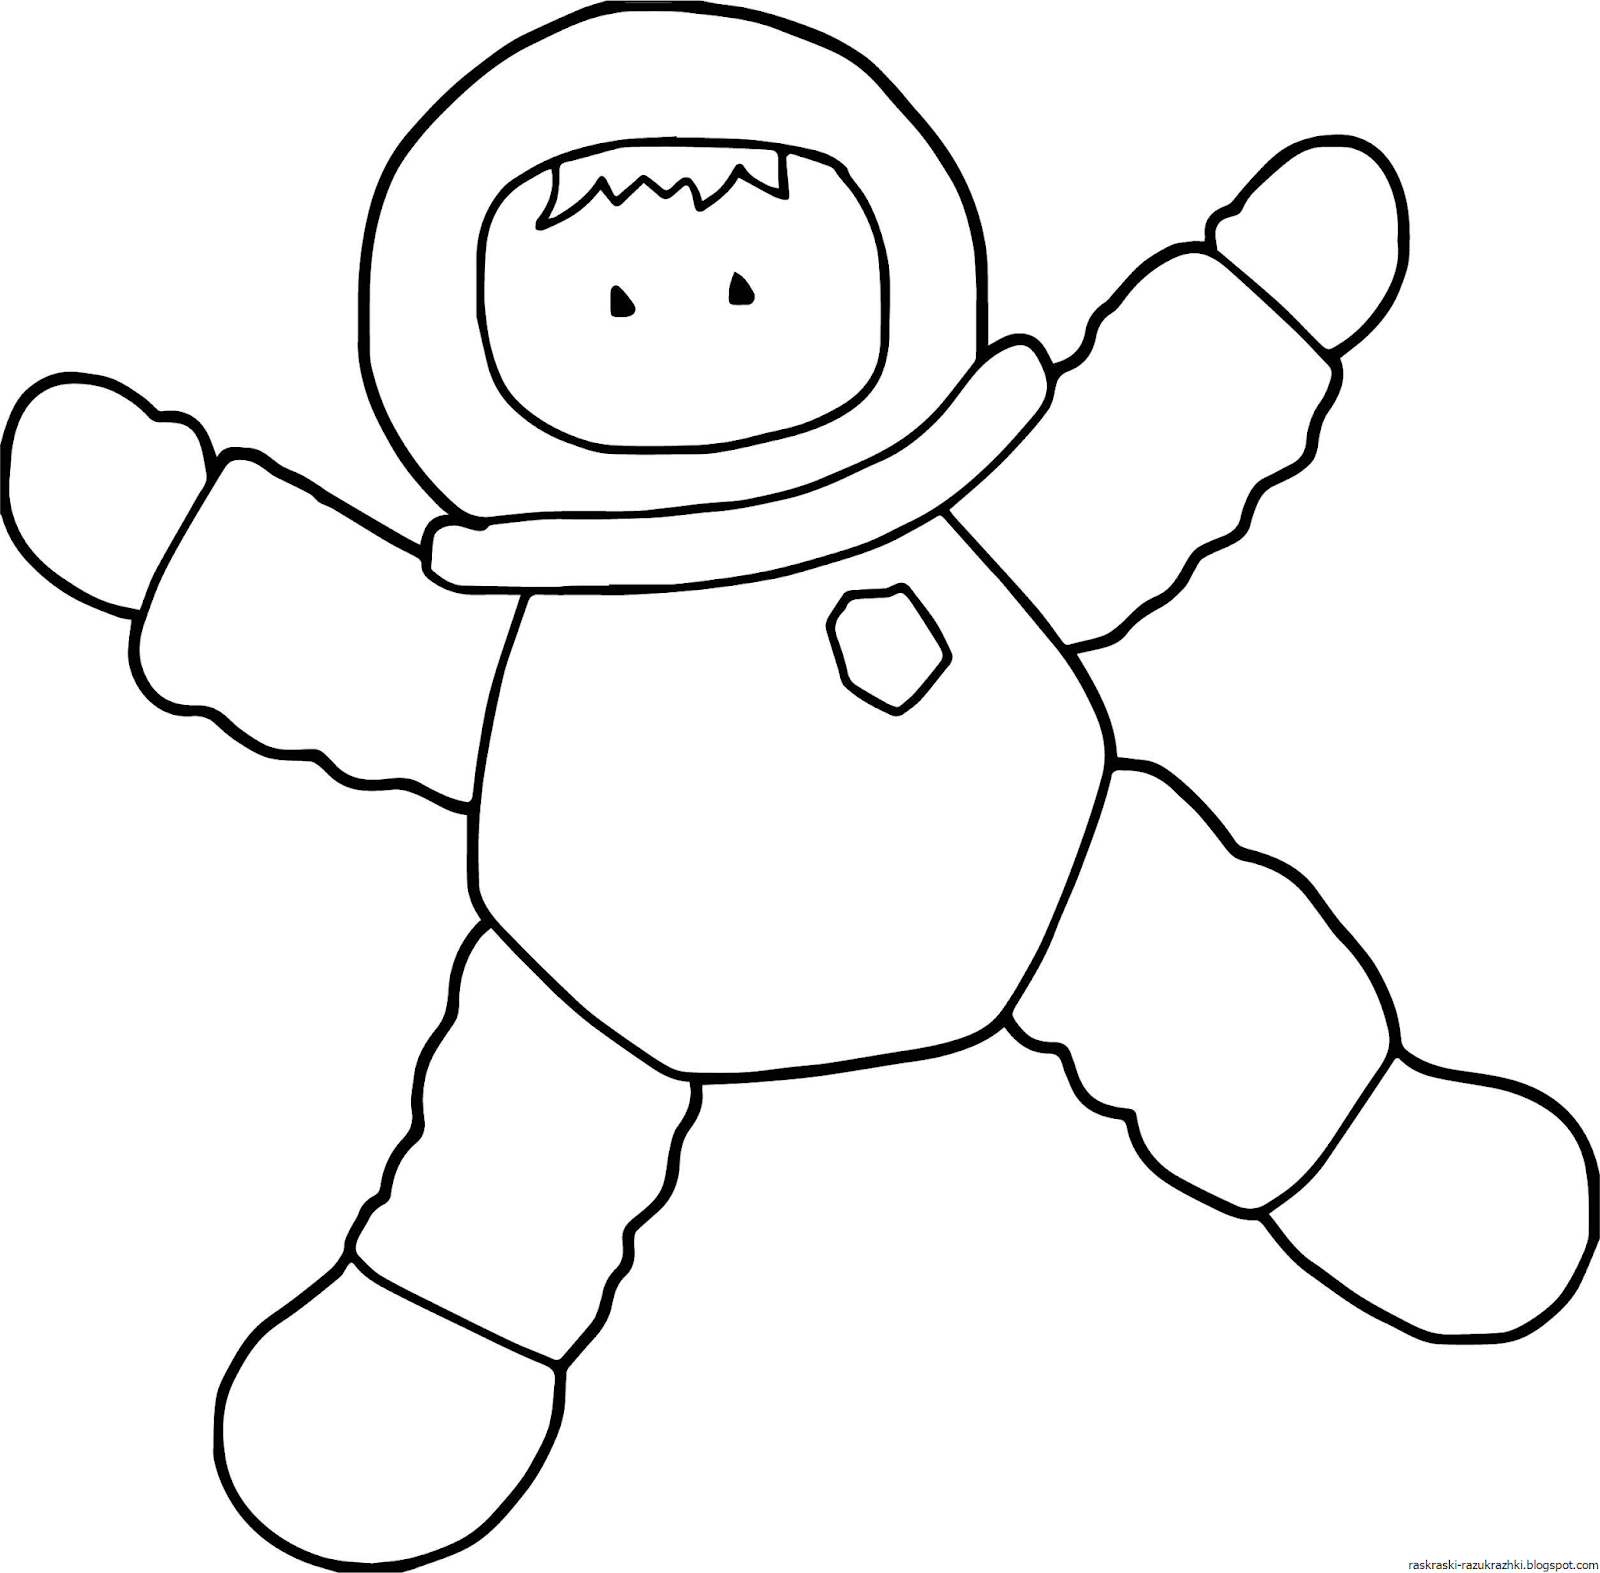 Распечатать космонавта для поделки. Космонавт раскраска. Космонавт трафарет для детей. Космонавт раскраска для детей. Космонавт картинки для детей раскраска.